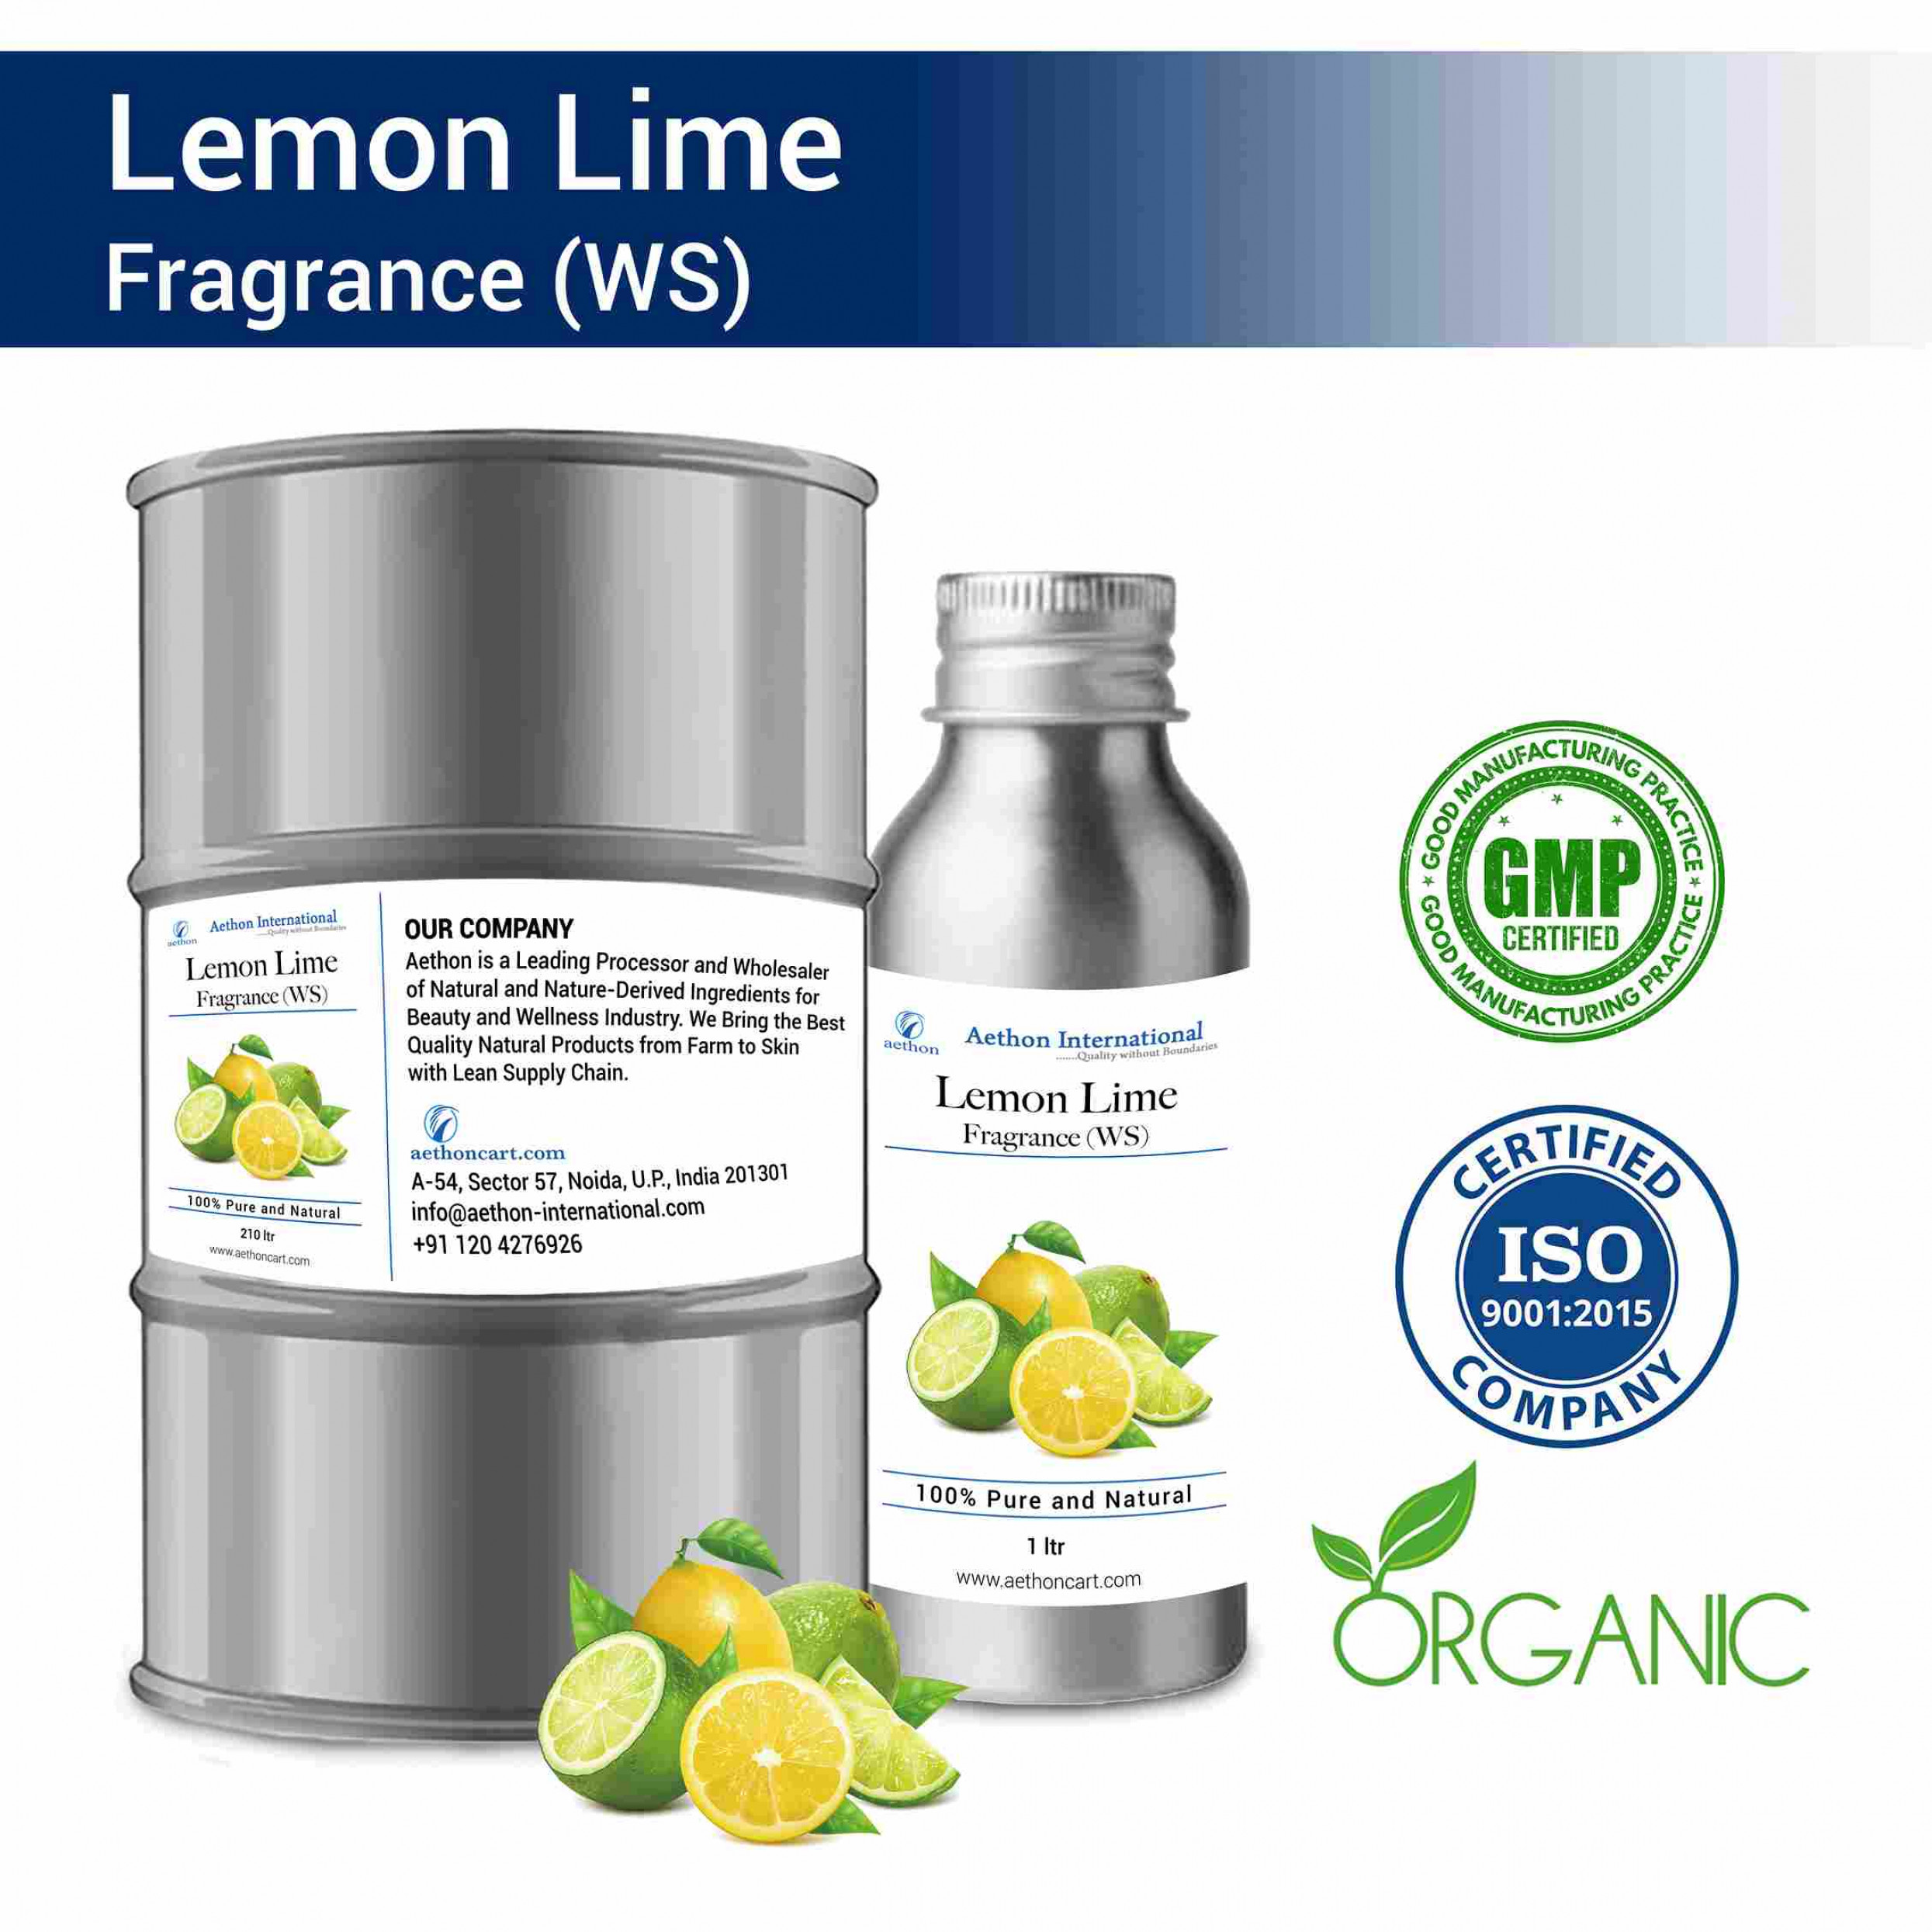 Lemon Lime Fragrance (WS)